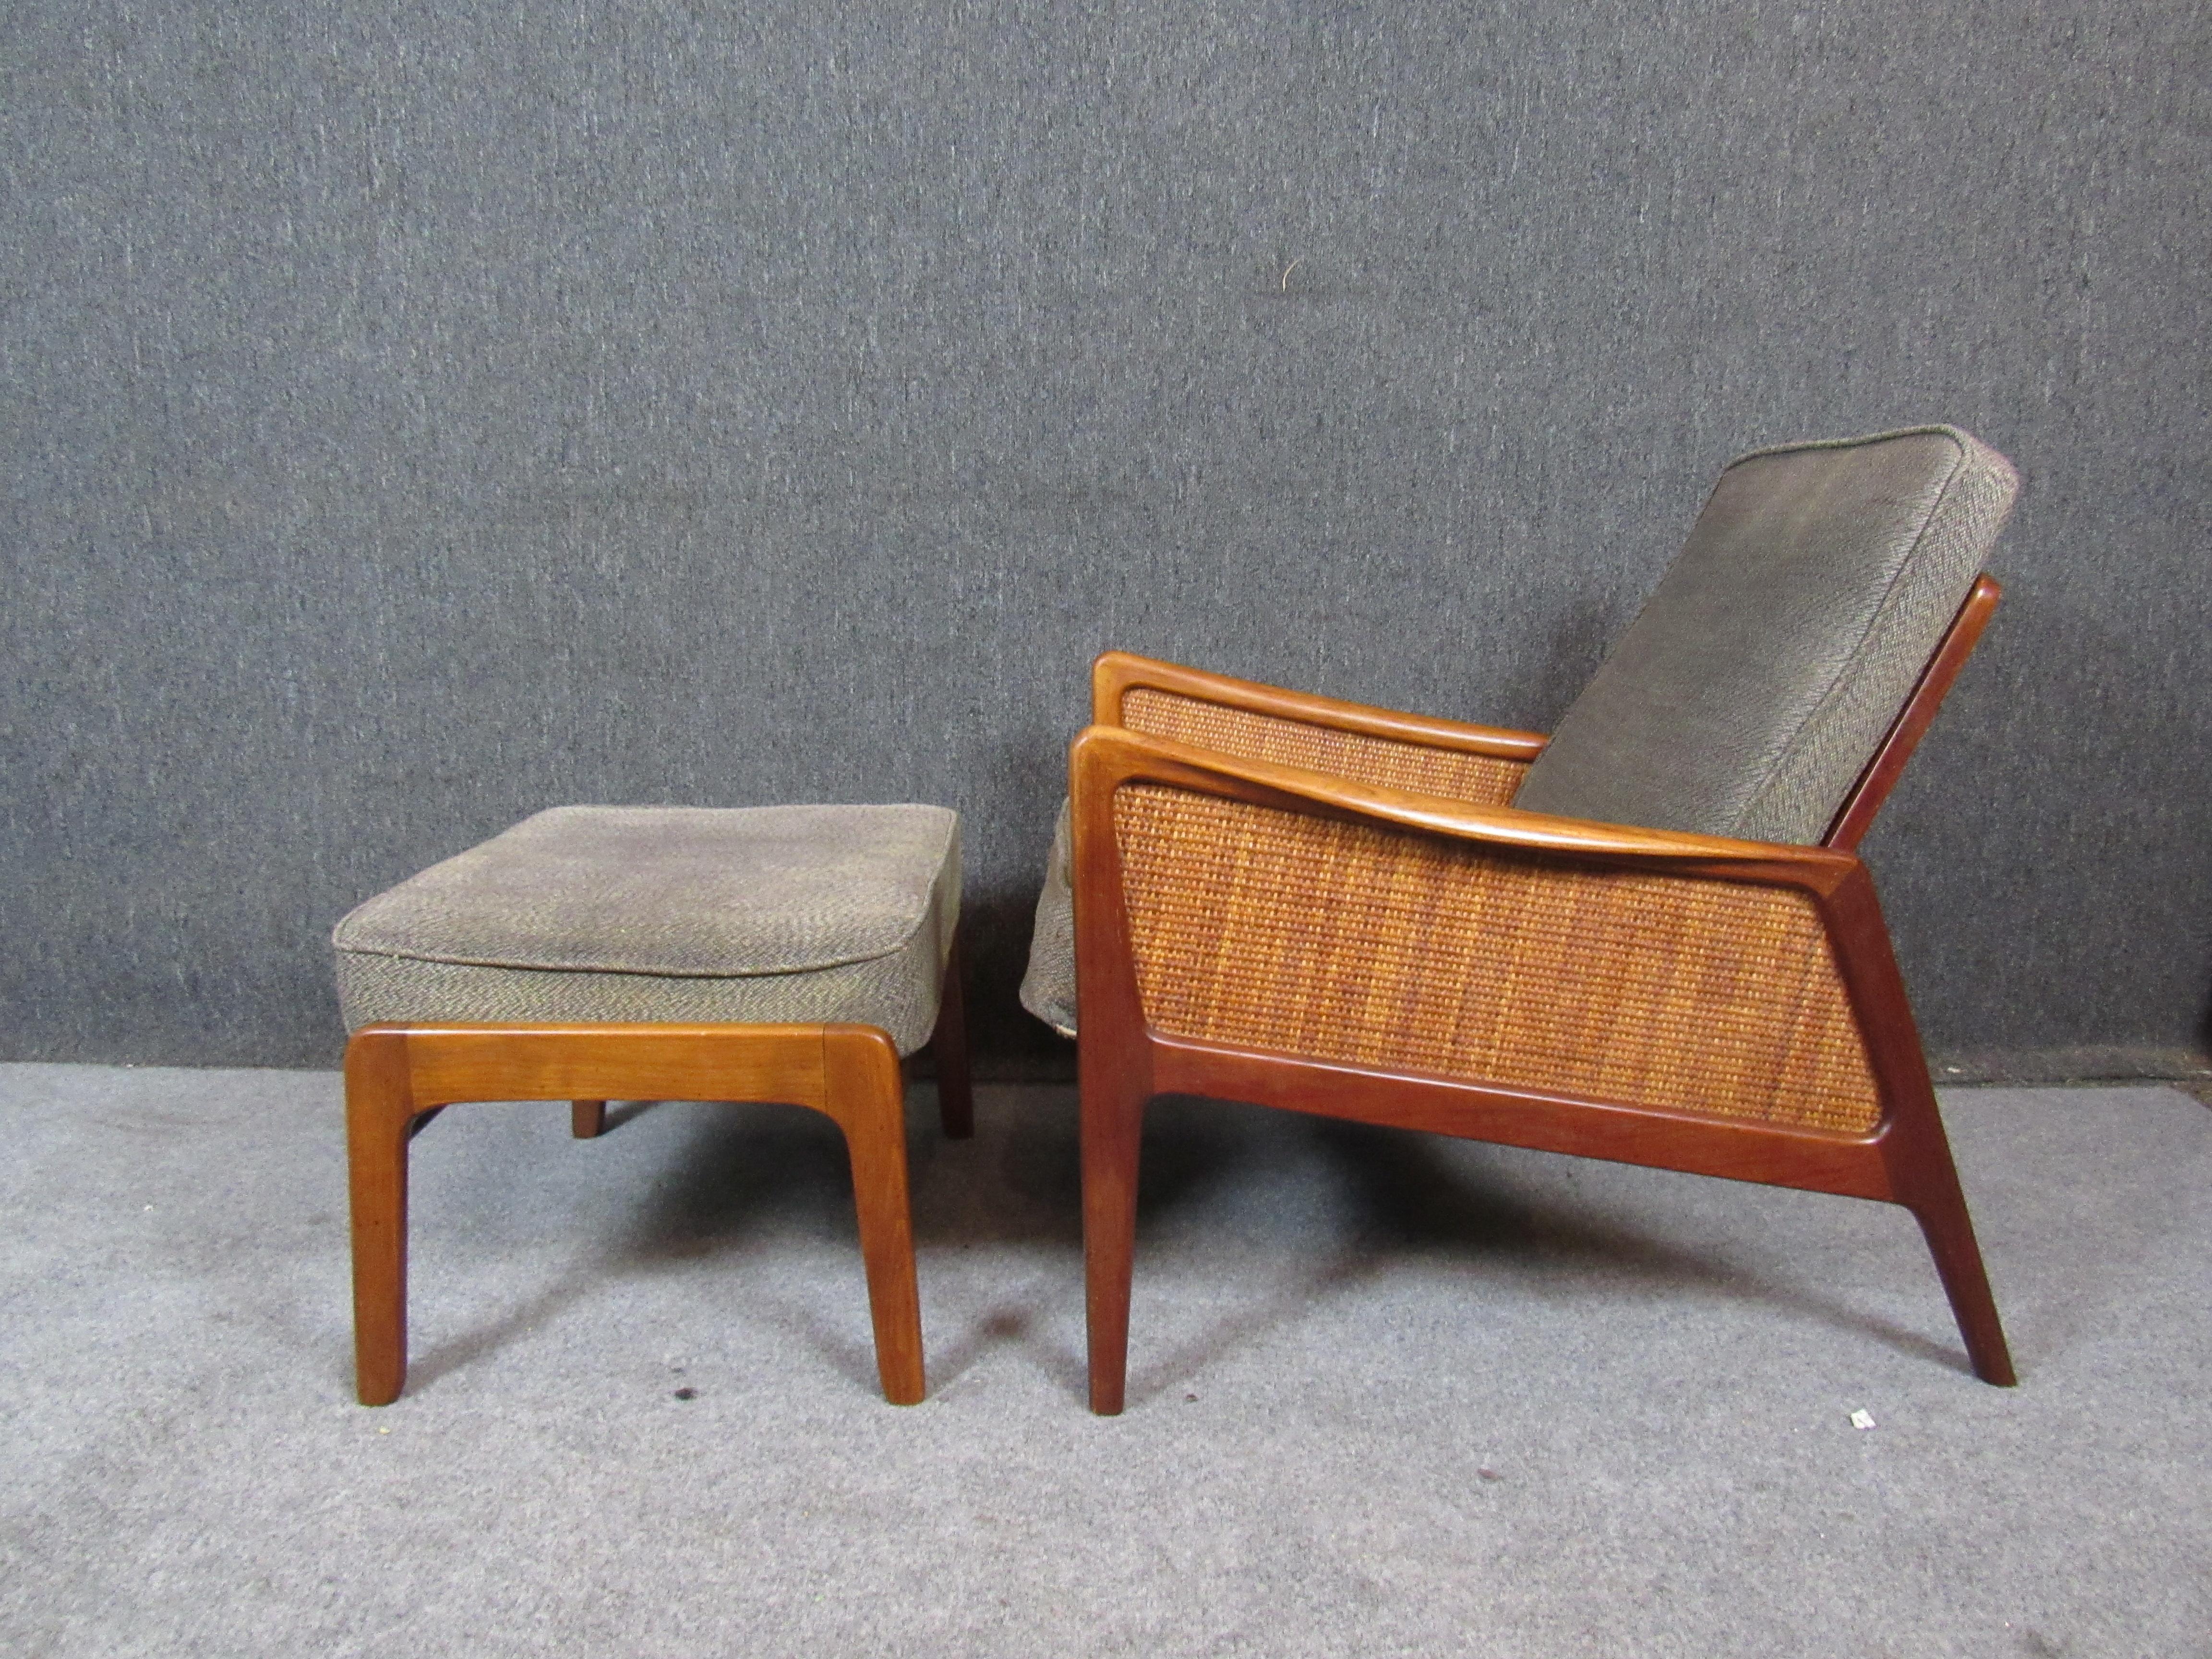 Voici une chaise exceptionnelle et rare de la légendaire équipe de designers danois Peter Hvidt et Orla Mølgaard-Nielsen, produite pour John Stuart Inc. de Grand Rapids, MI. Assortie à l'emblématique lit de jour FD 451, la chaise longue FD 151